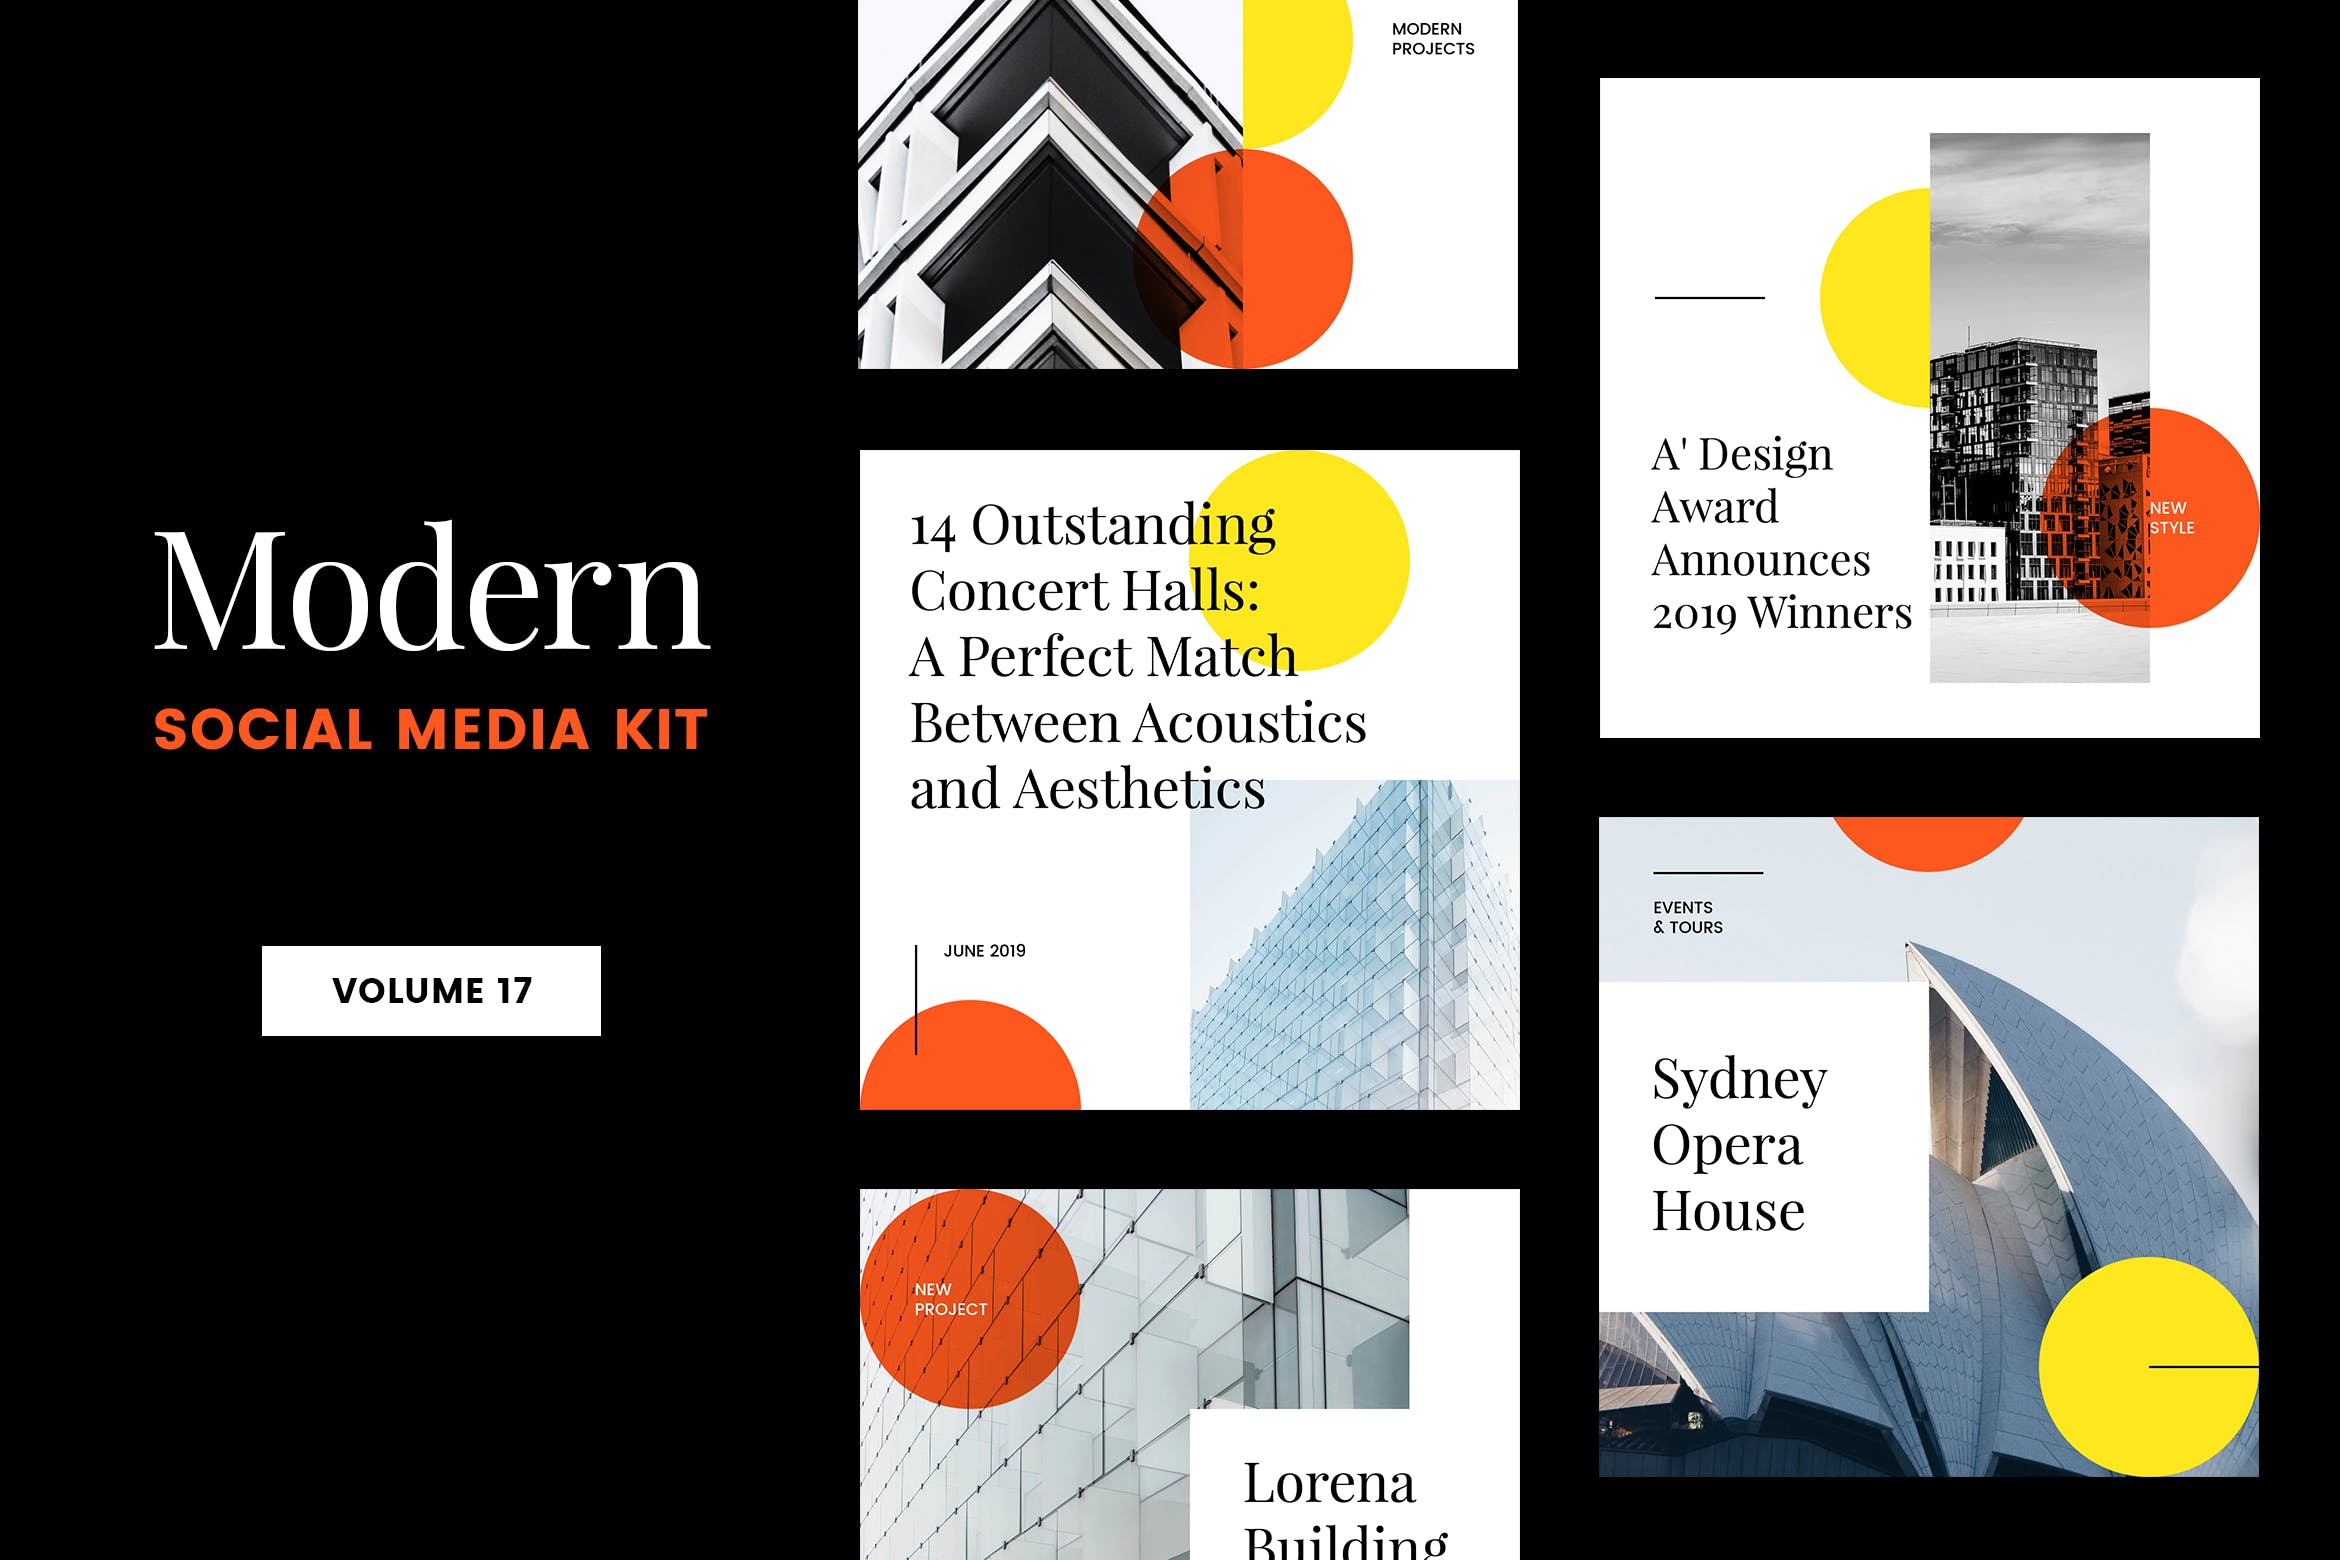 现代设计风格Instagram社交媒体品牌故事推广模板第一素材精选v17 Modern Social Media Kit (Vol. 17)插图